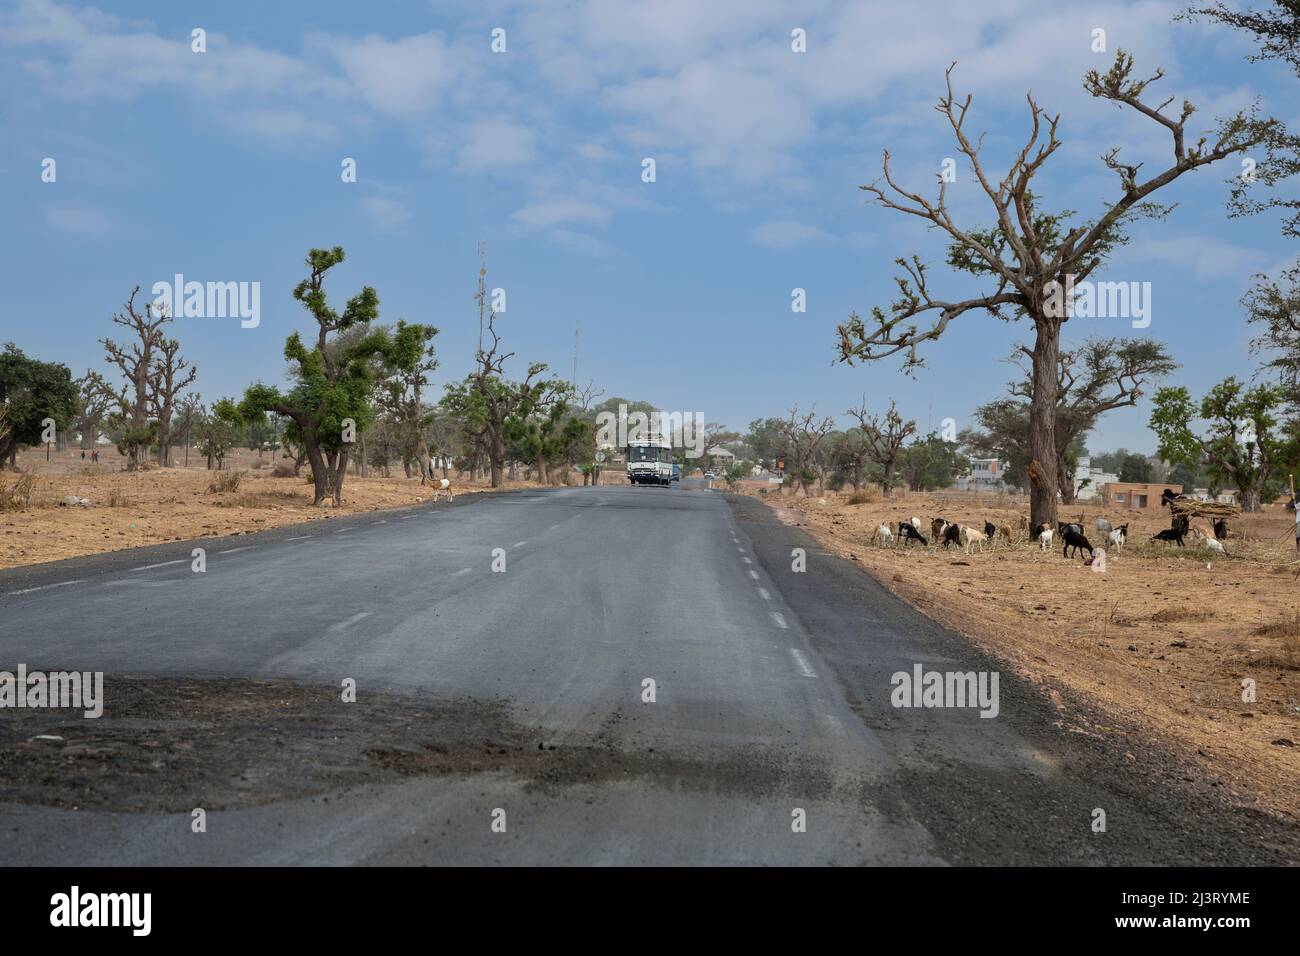 Schlechter werdende Straßenoberfläche auf asphaltierter Autobahn, in der Nähe von Koalack, Senegal. Zwei Telephone Relay Towers links von der Mitte. Stockfoto